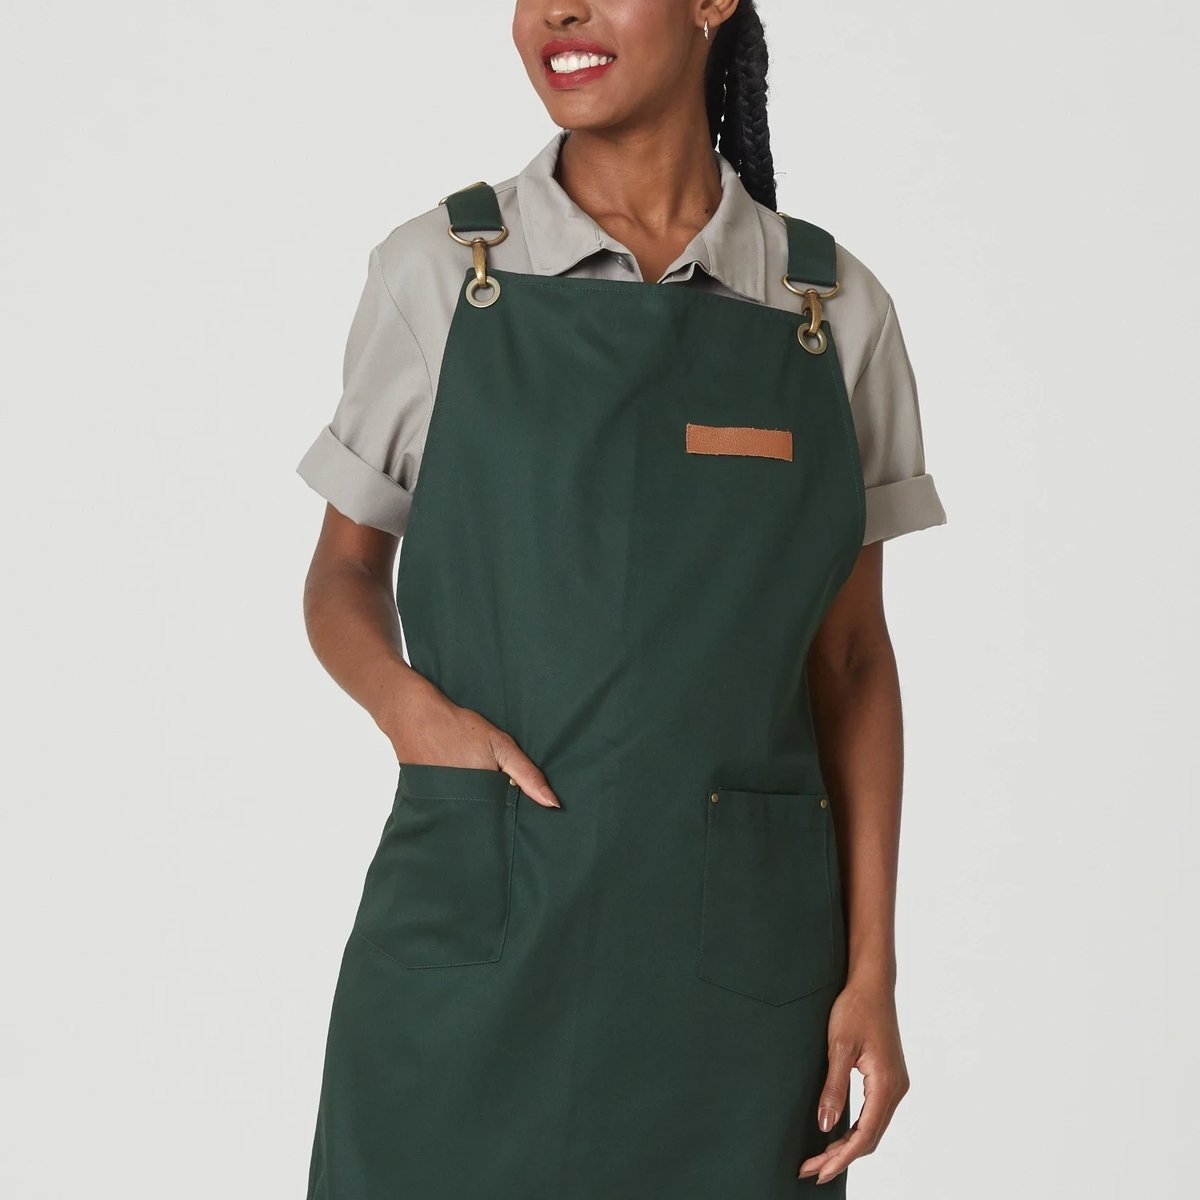 uniforme-verde-avental-cafeteria